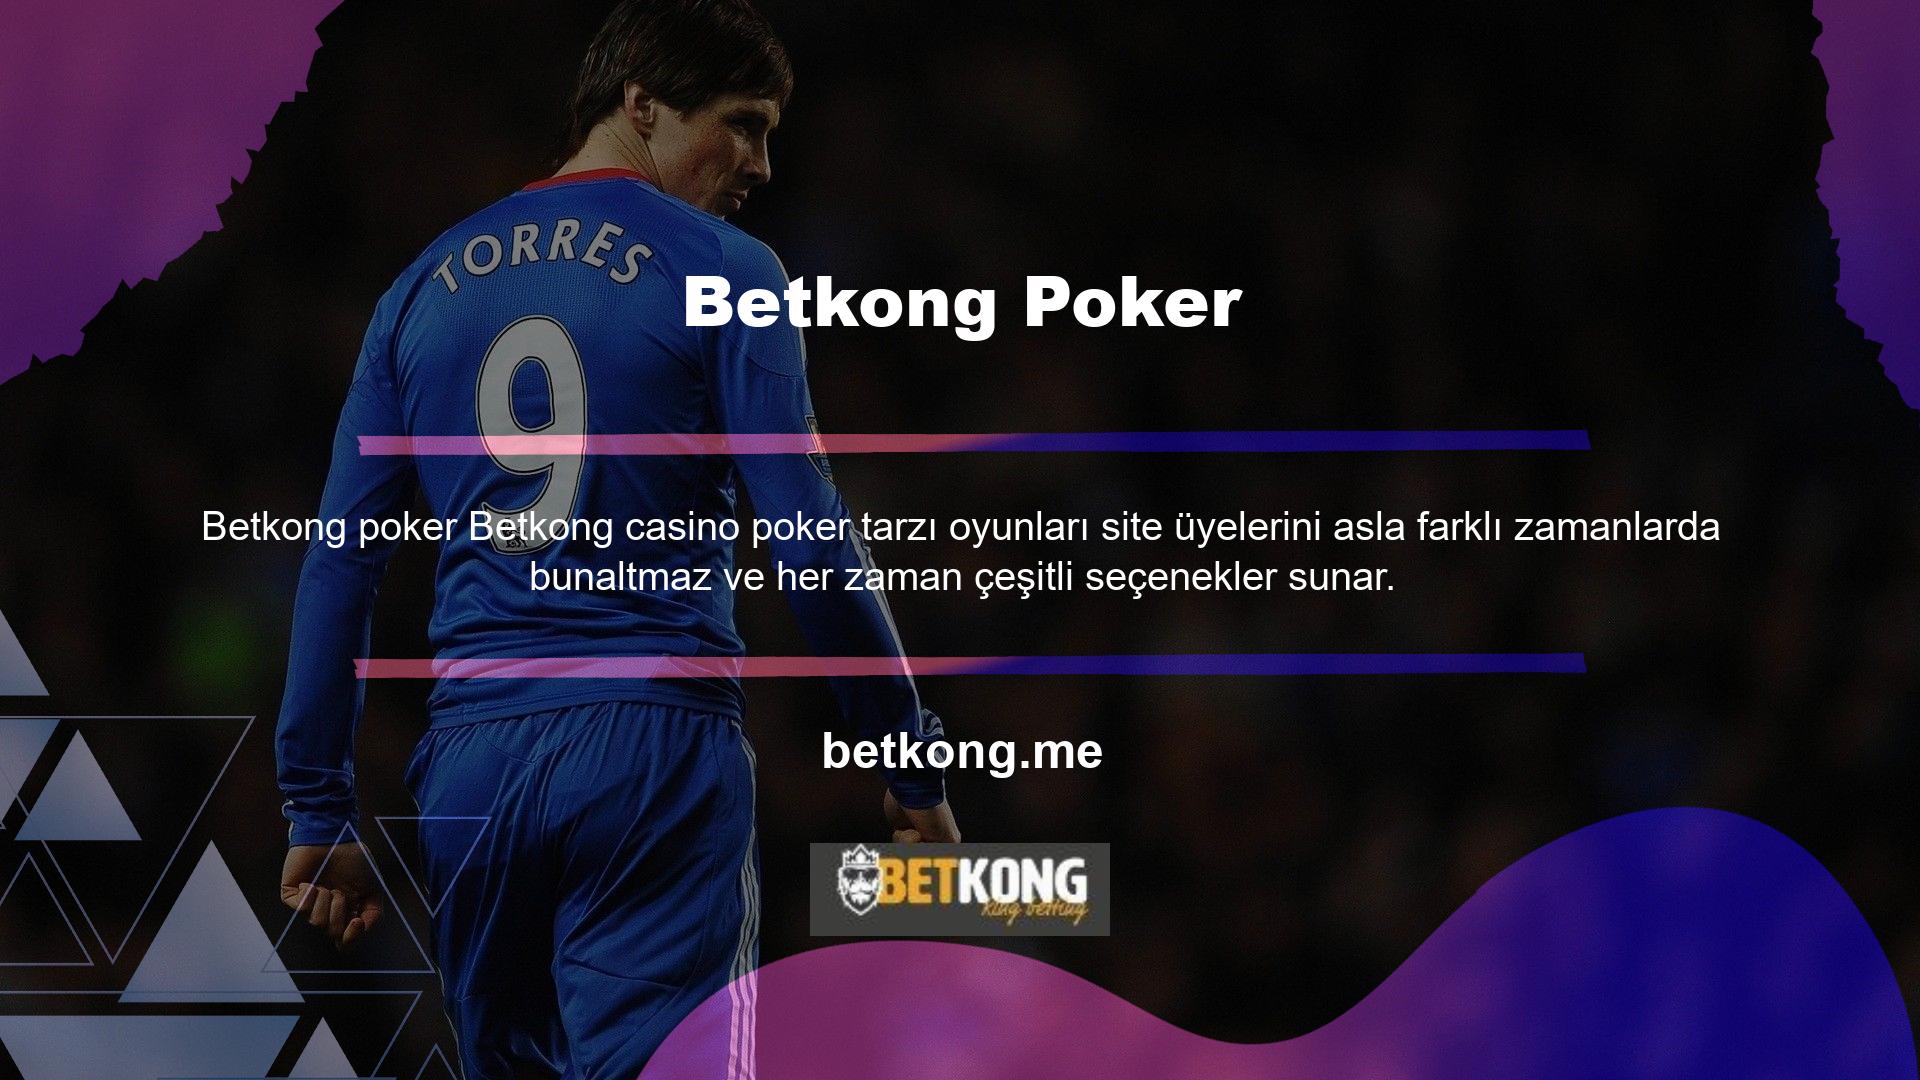 Betkong online mobil casino poker oyunlarıyla büyük kazanabilirsiniz